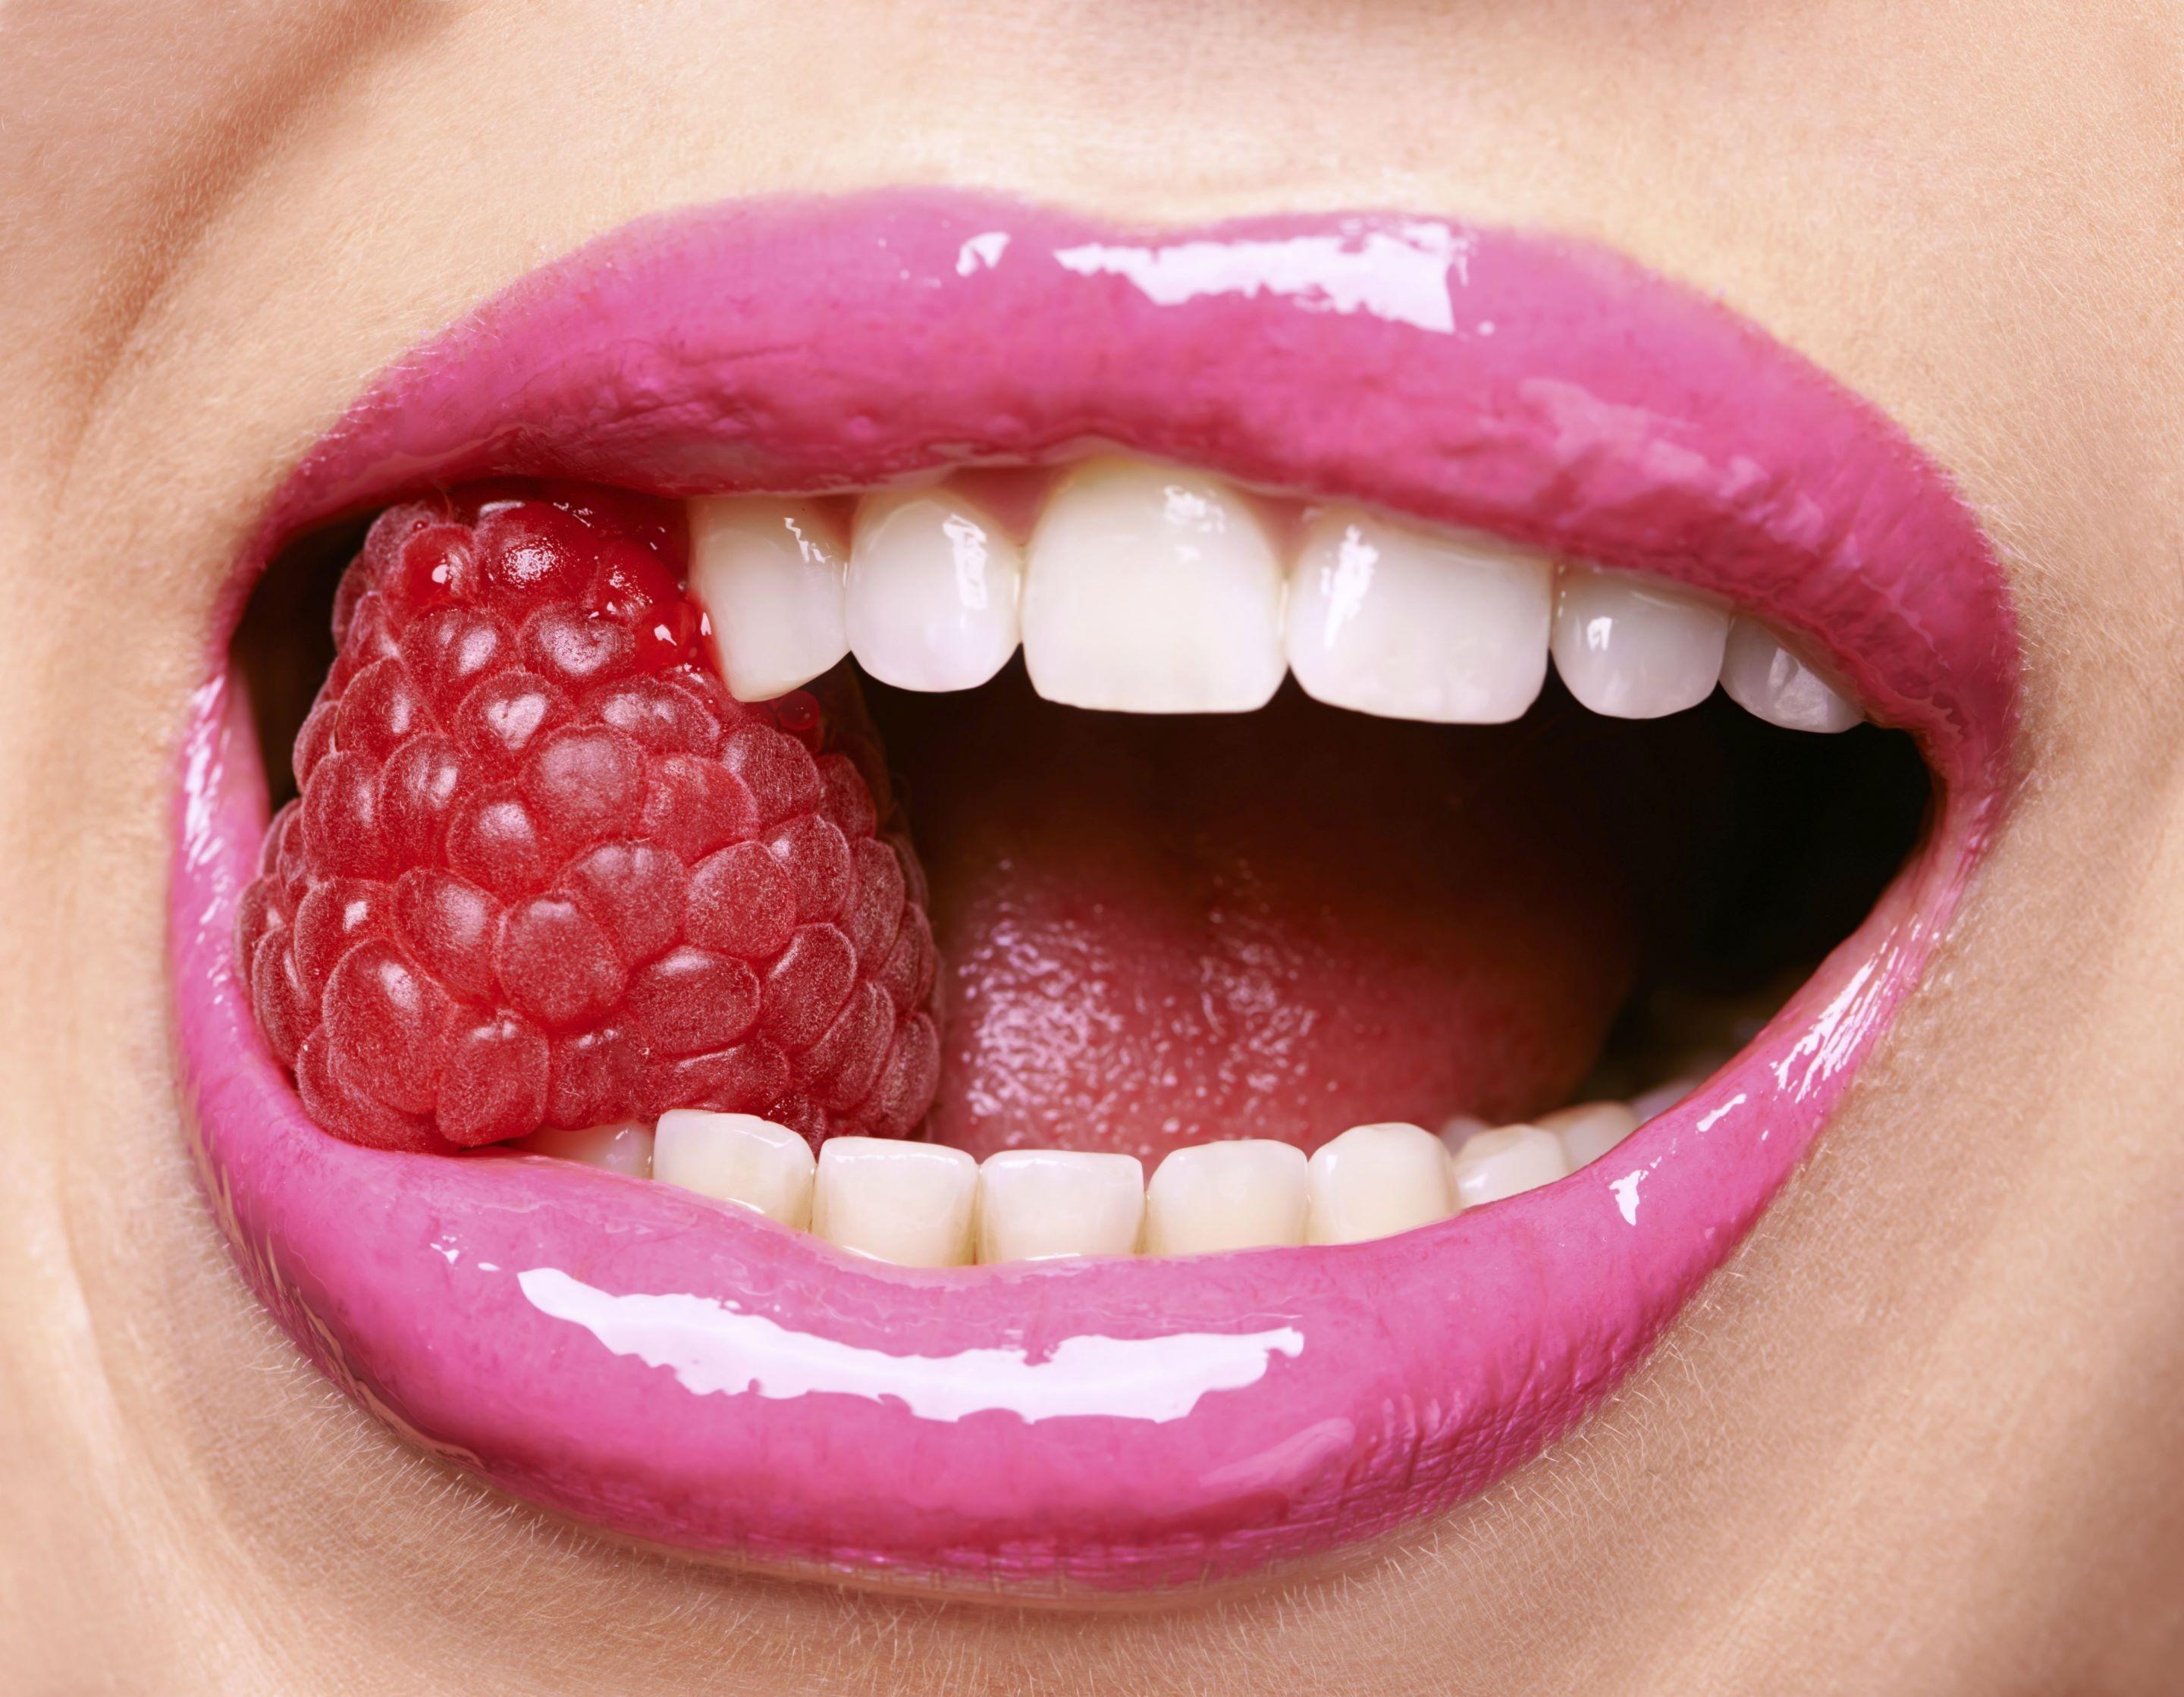 #lips, #fruit, #open mouth, wallpaper. People wallpaper